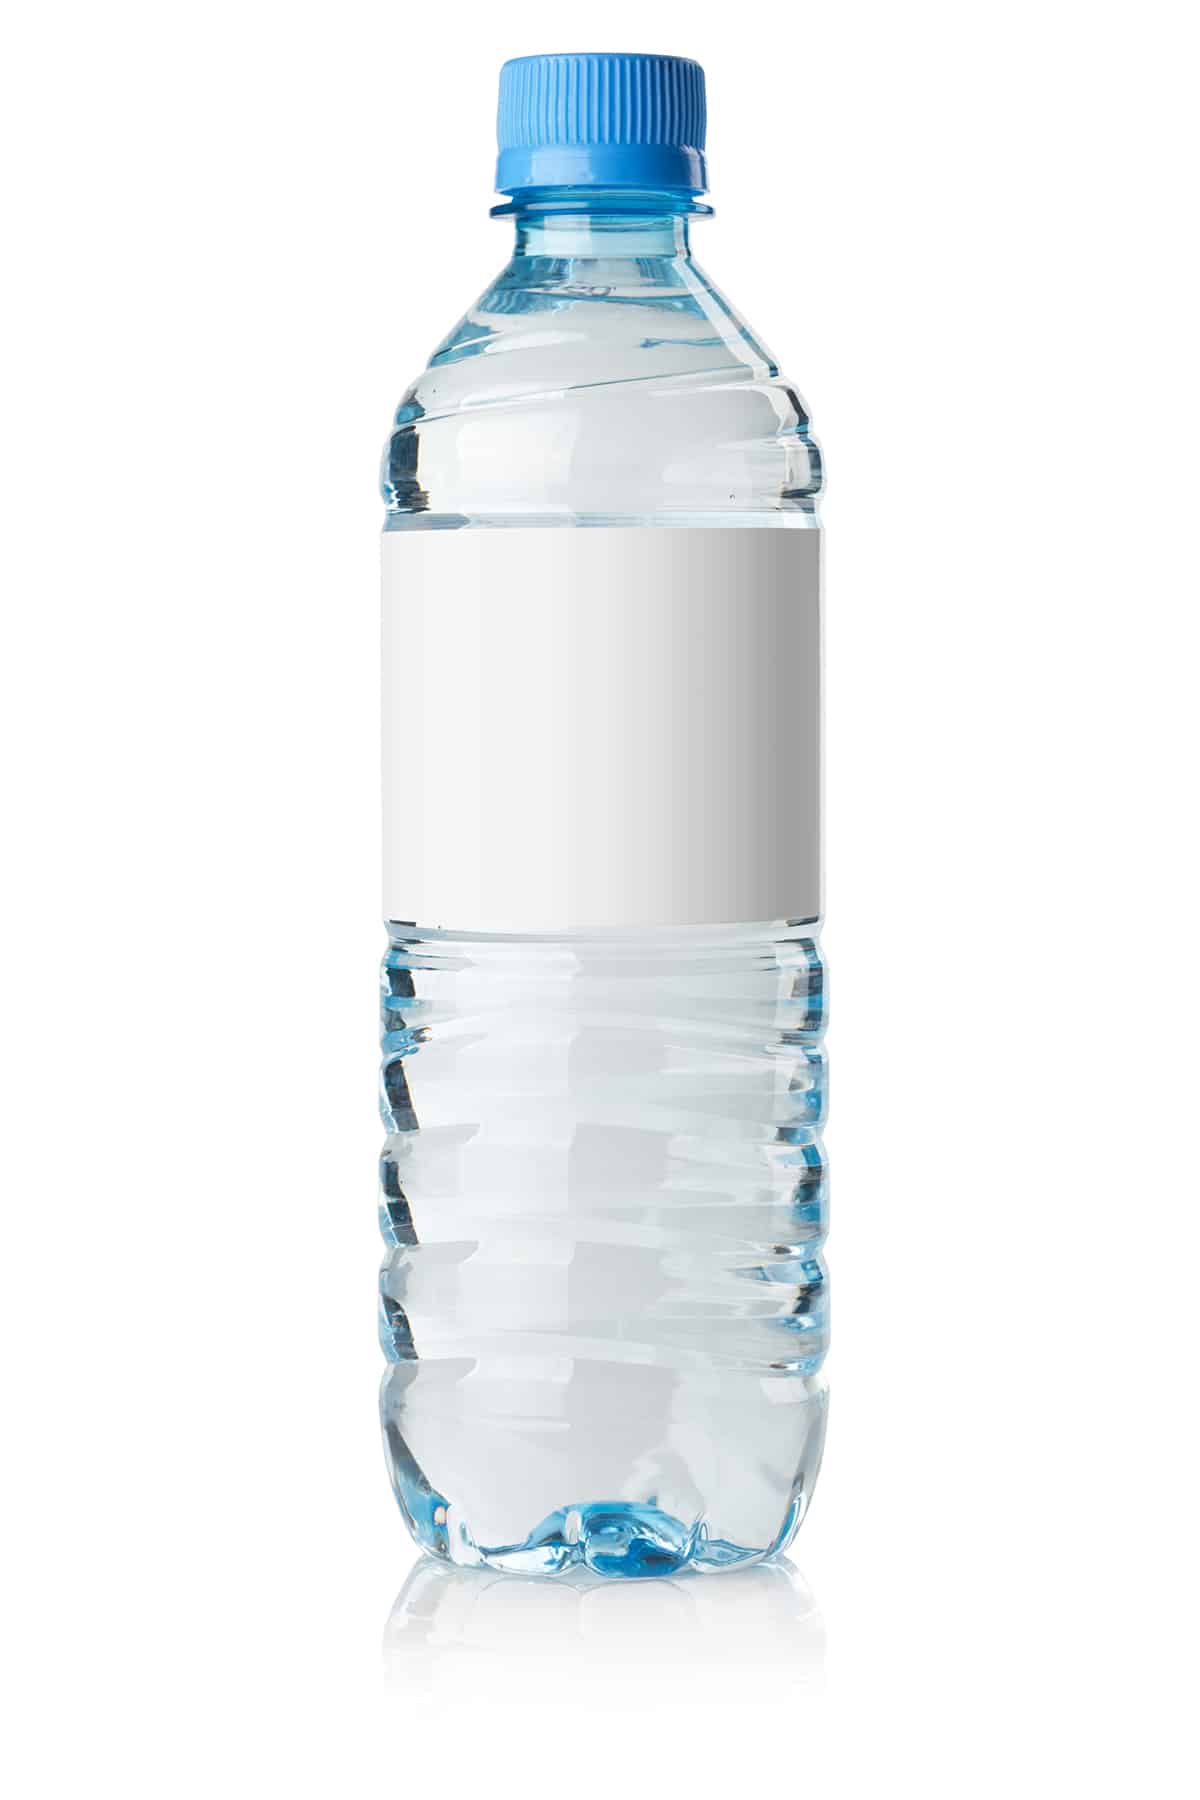 21 500-ml Water Bottle Caps